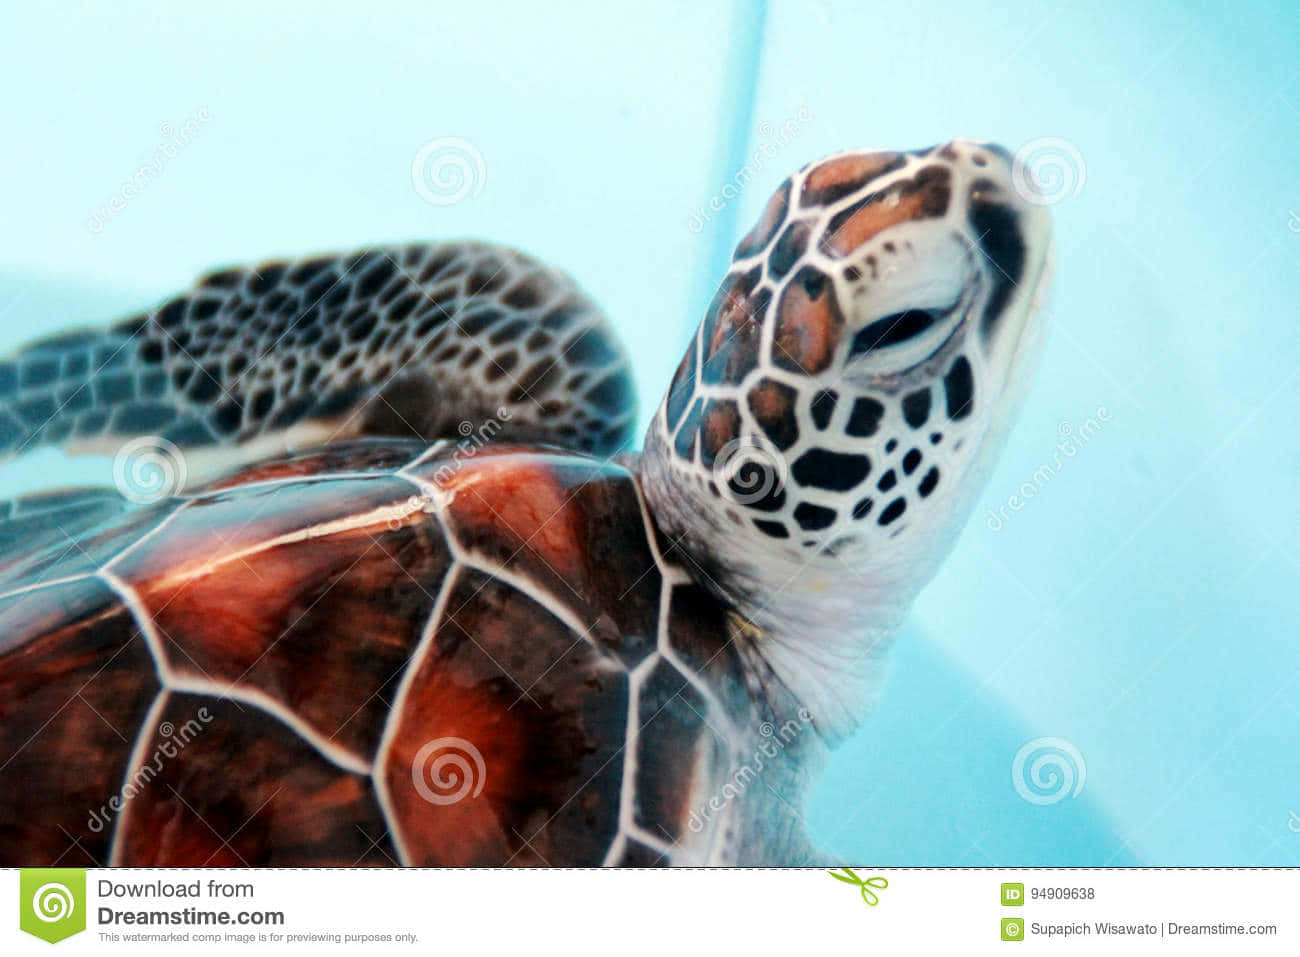 Enbaby-skildpadde, Der Finder Sin Vej I Livet. Wallpaper